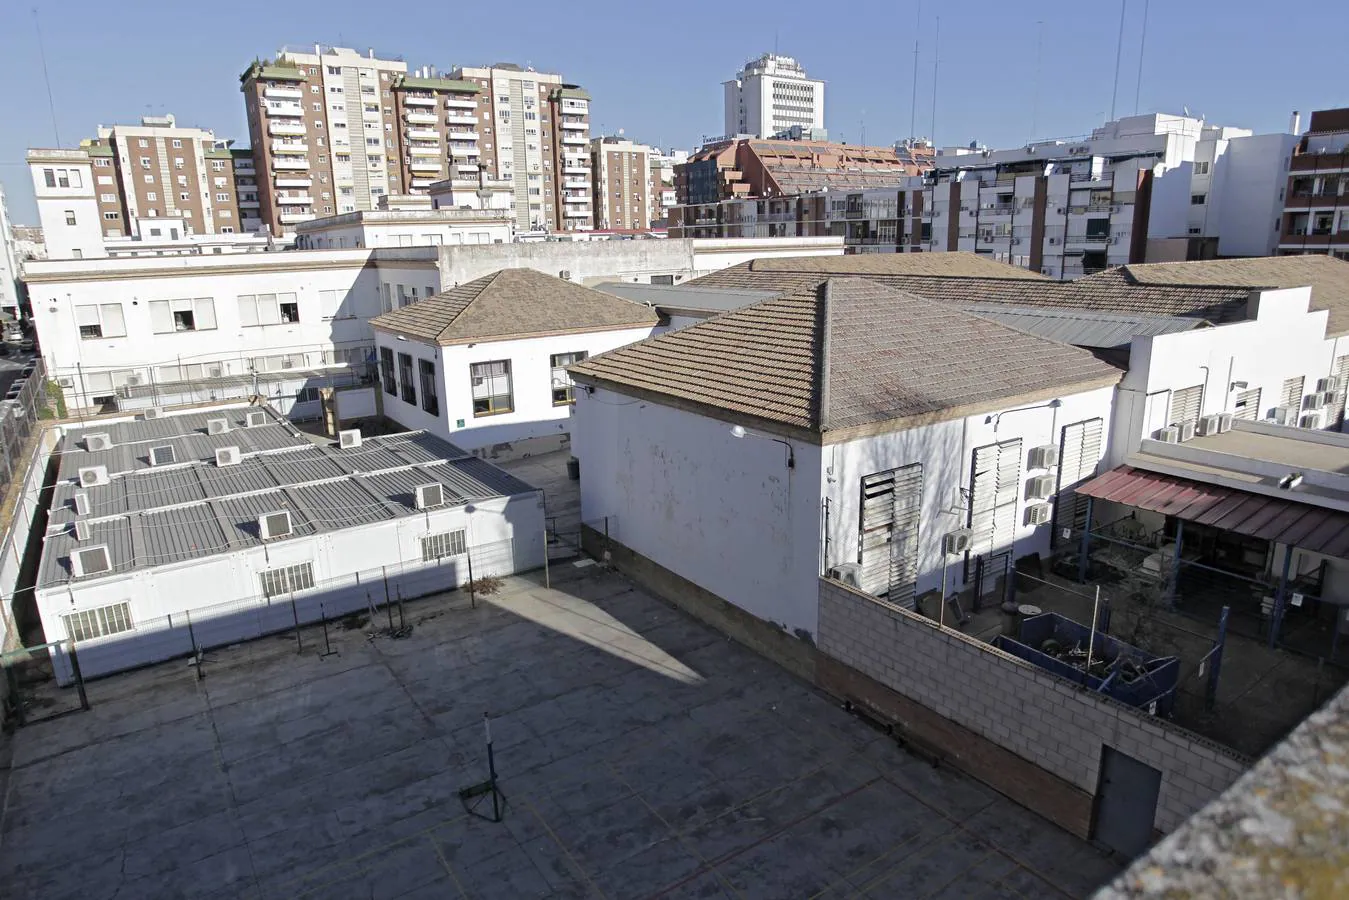 El Instituto Politécnico de Sevilla se queda pequeño